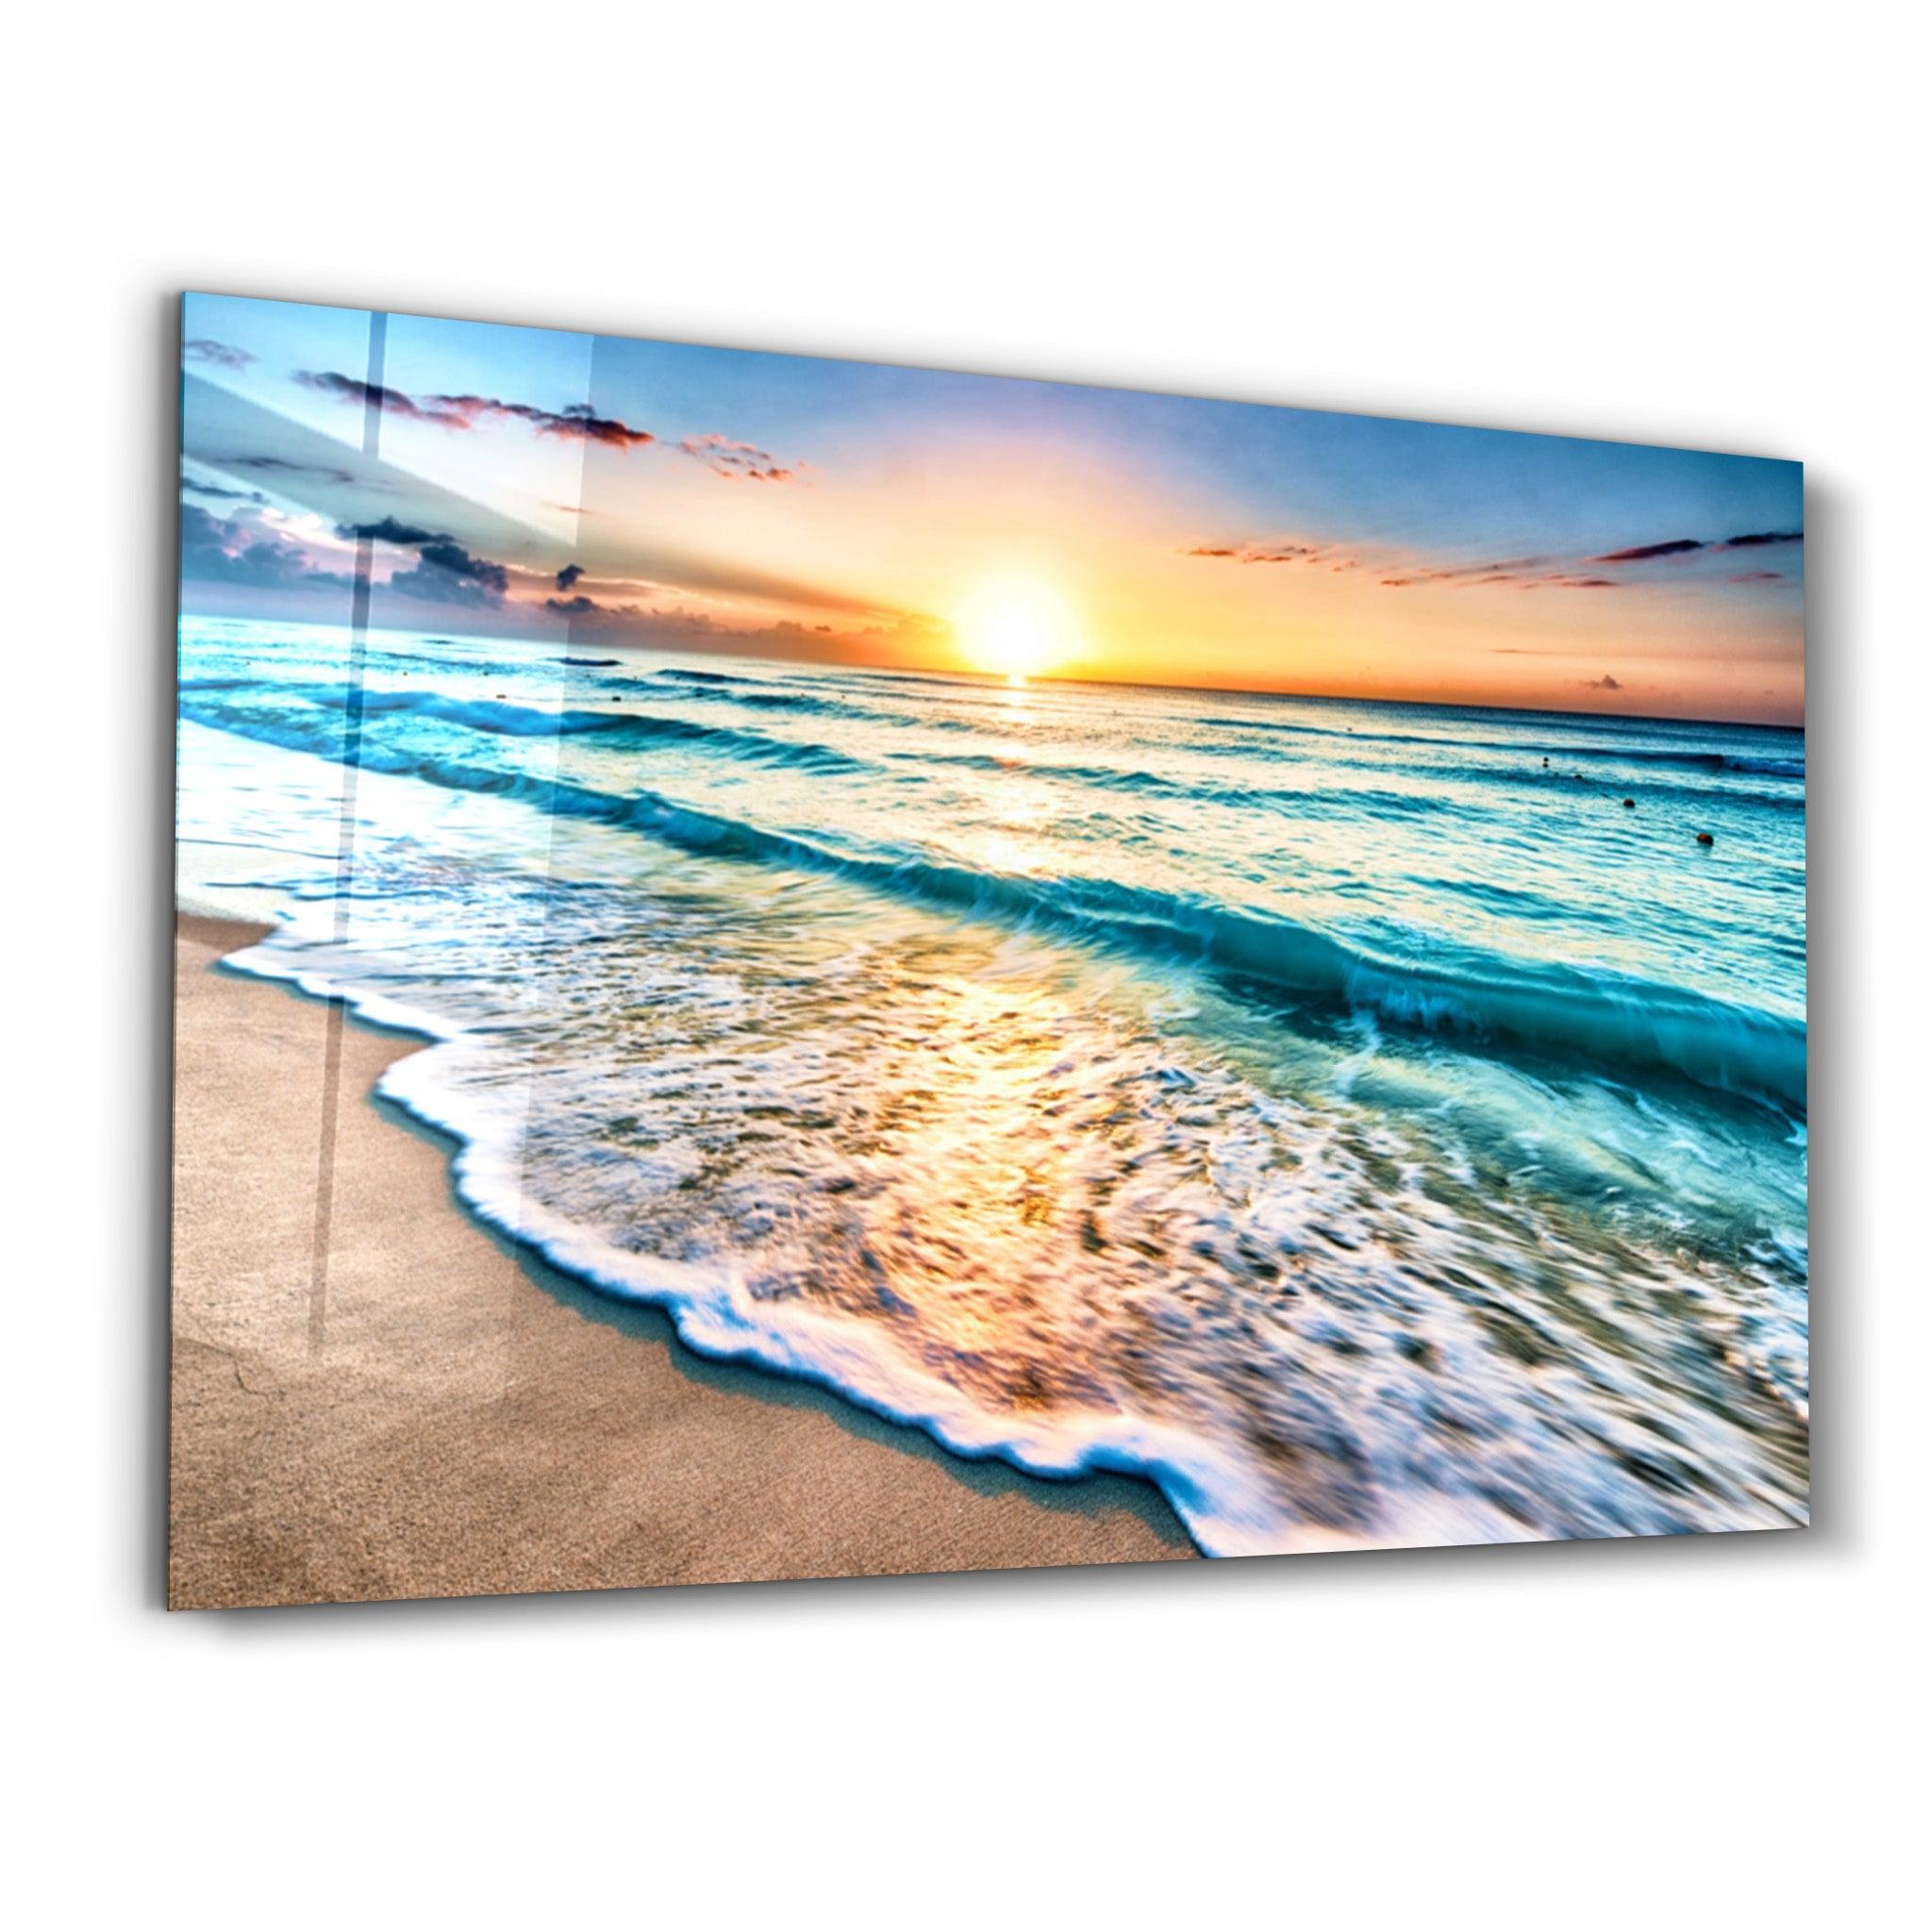 Ocean and Sunset | Glass Wall Art - ArtDesigna Glass Printing Wall Art